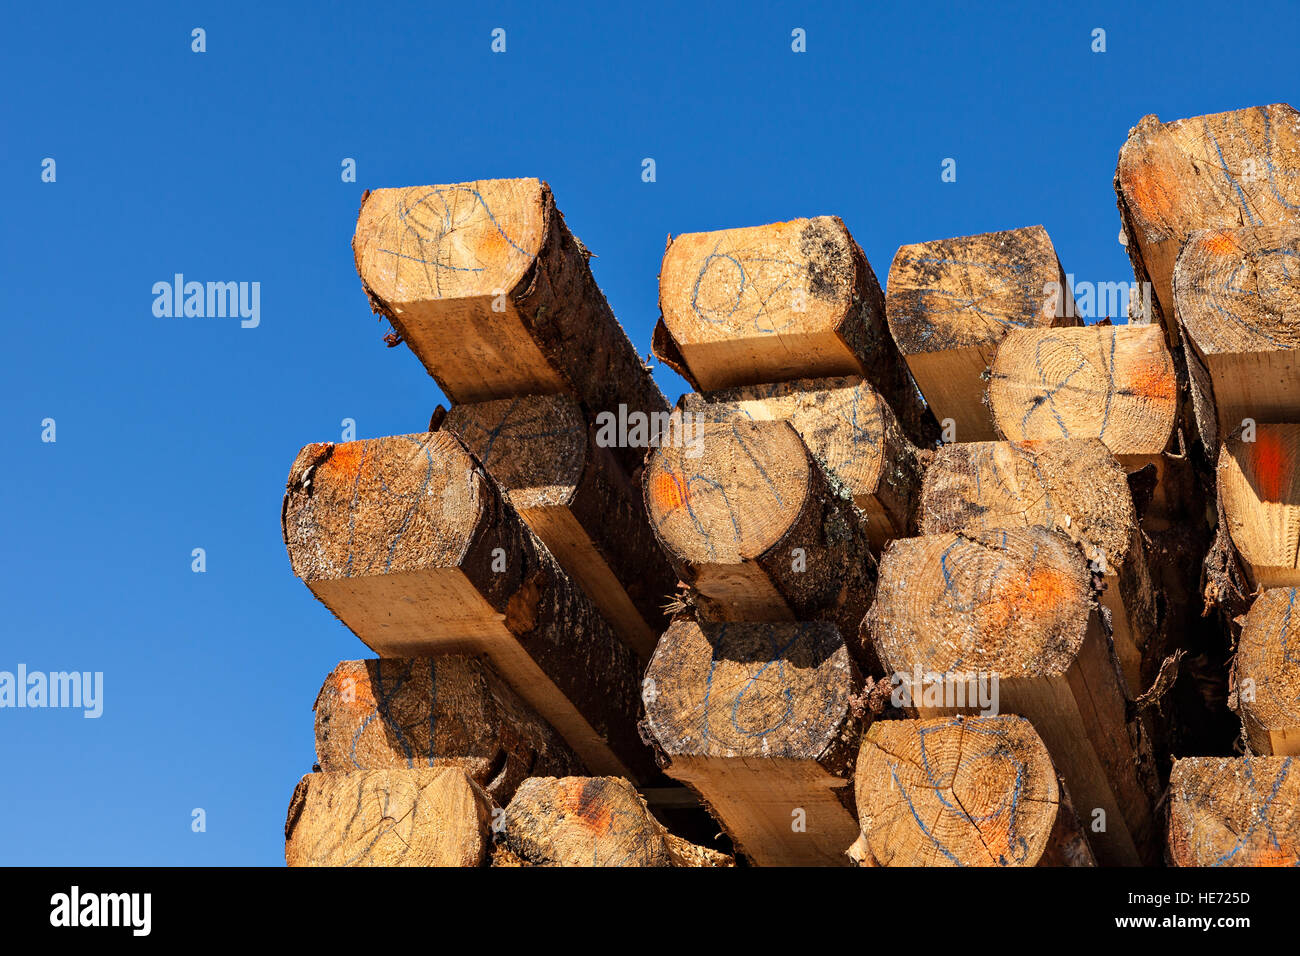 Pila de viga de madera en sawmil. Foto de stock